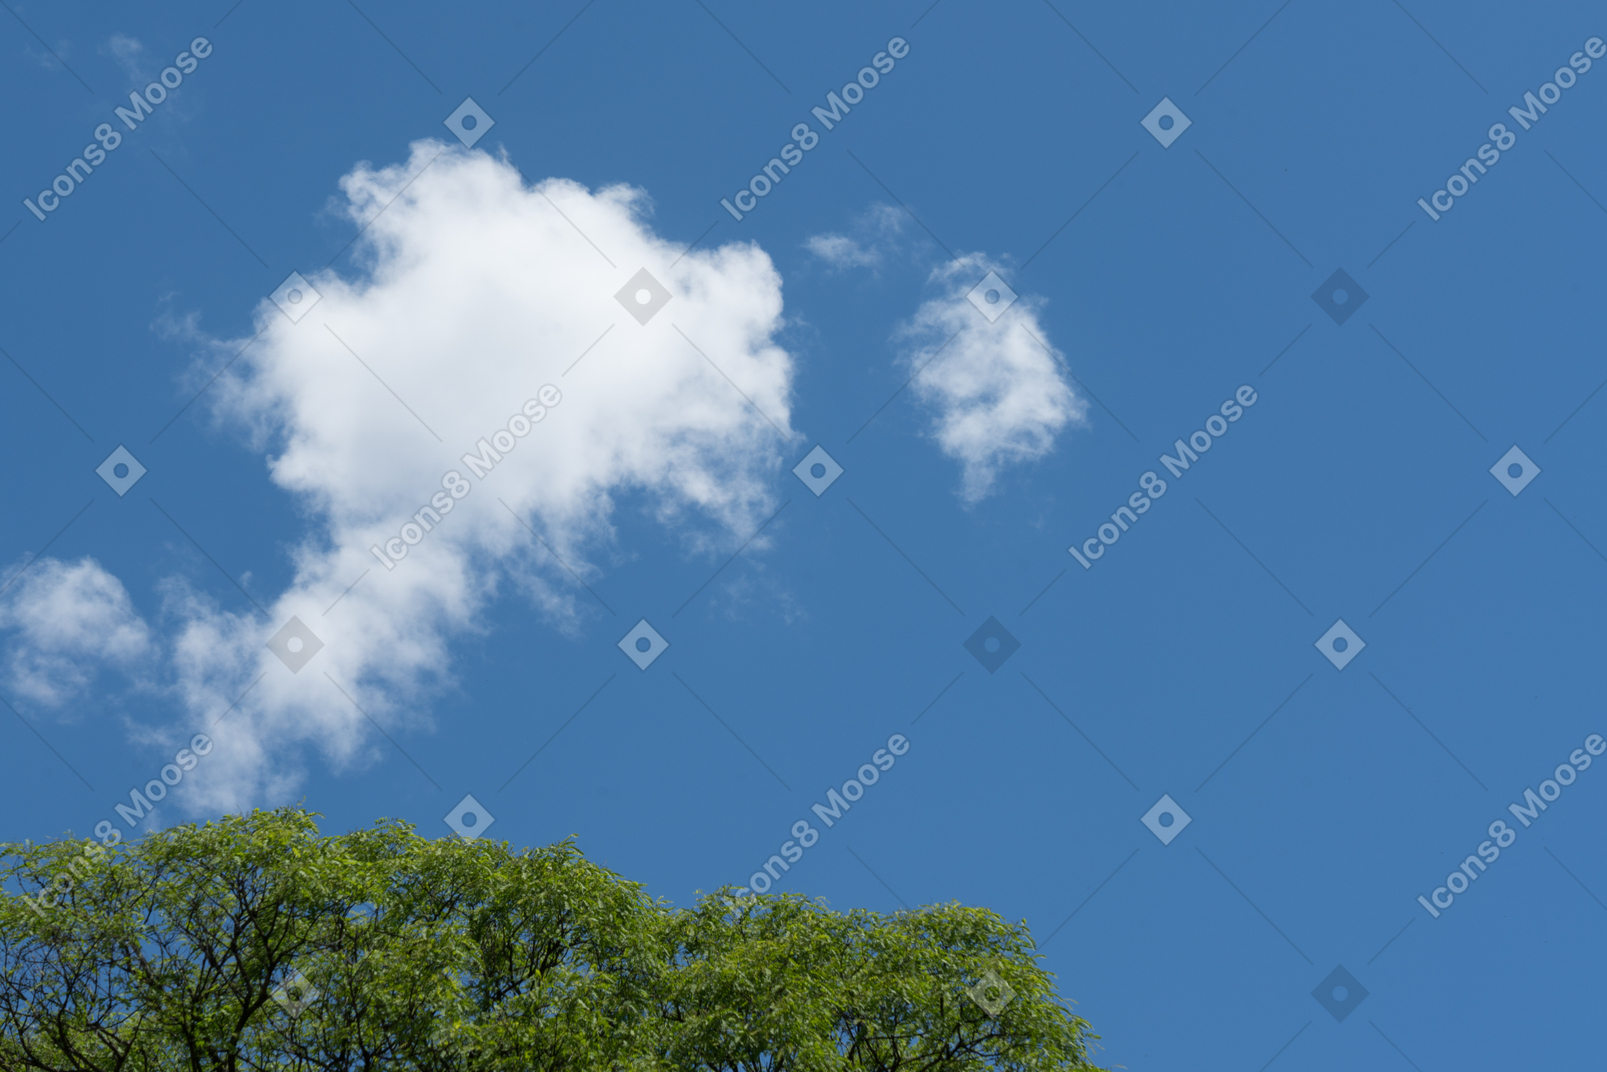 Ciel bleu avec nuage et arbre